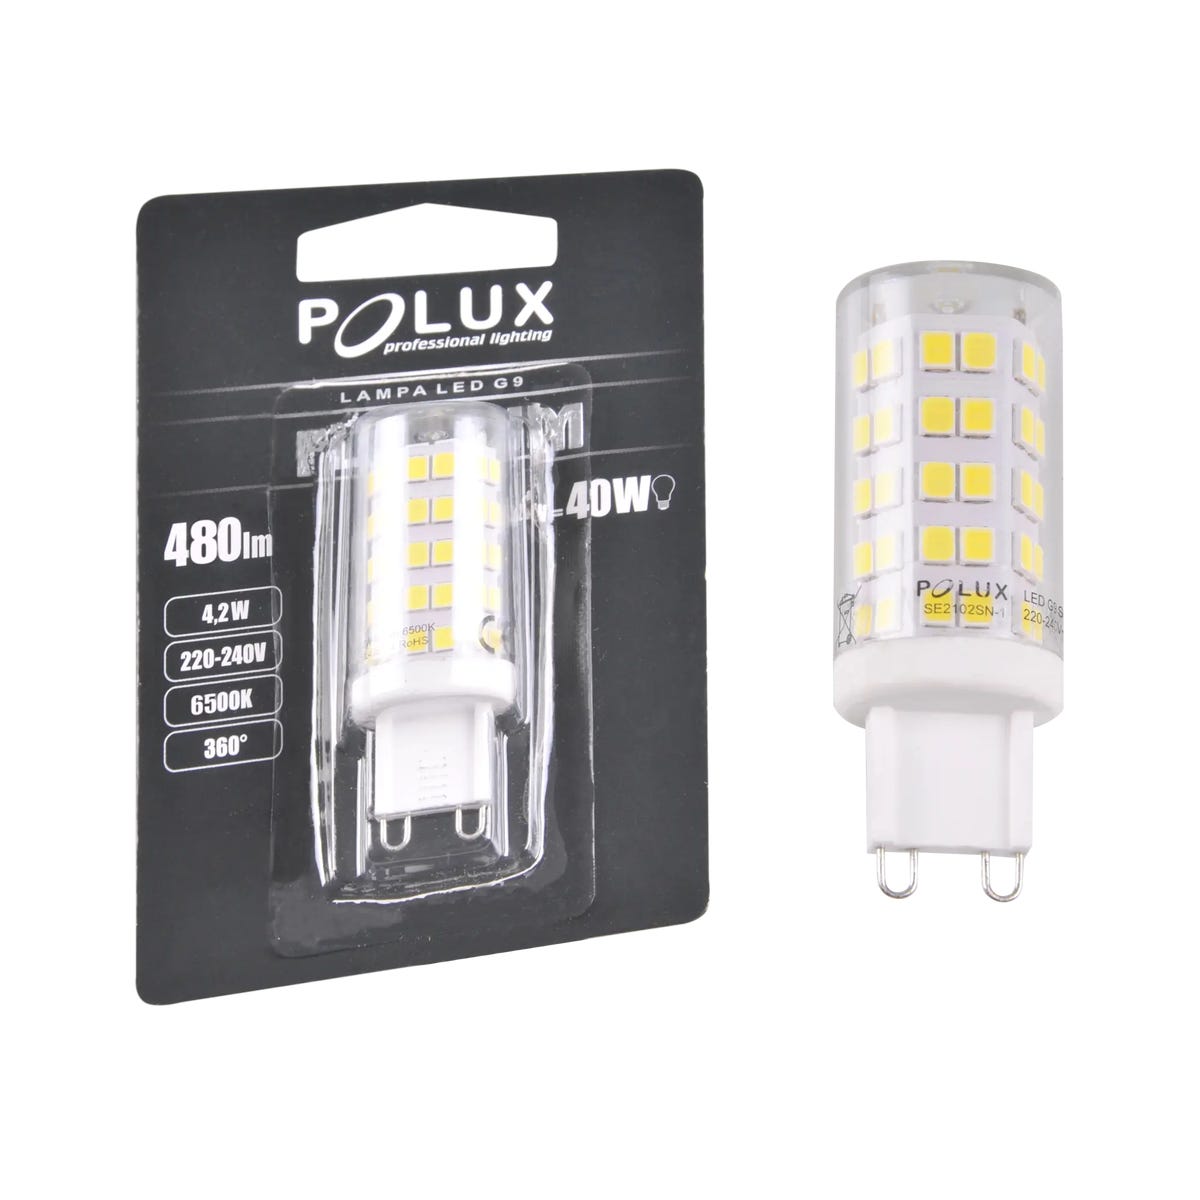 Zdjęcia - Żarówka Polux  LED G9  4 W 470 lm Zimna biel SMD (230 V)